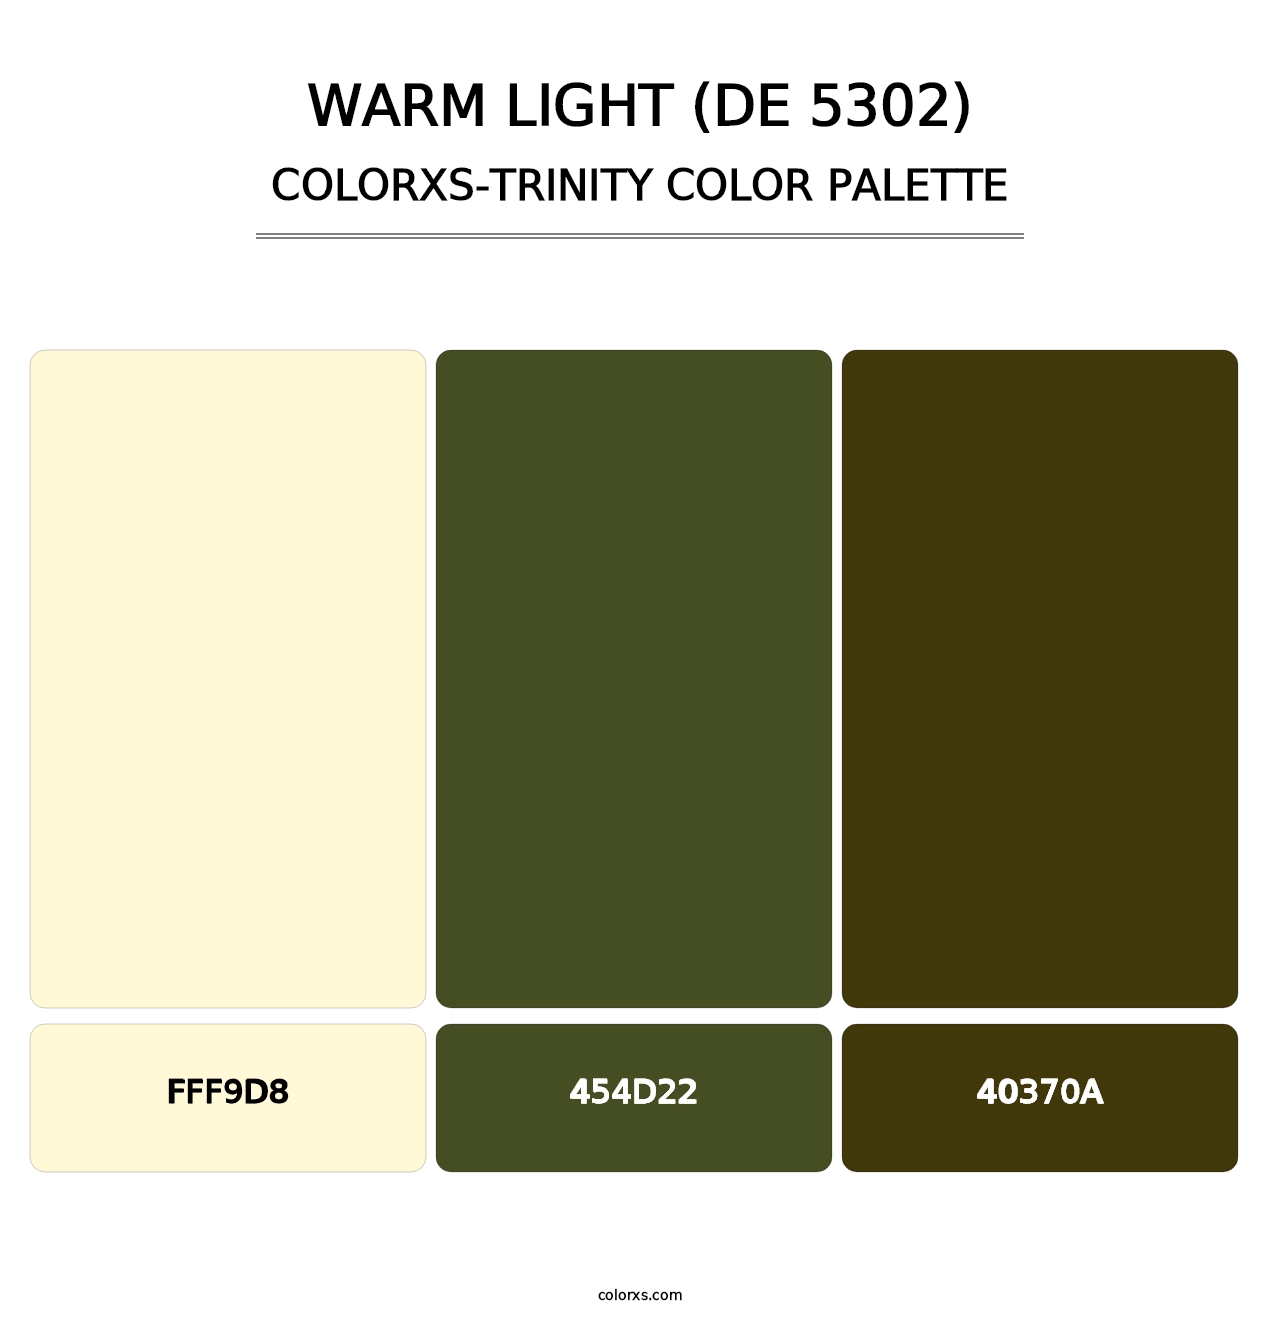 Warm Light (DE 5302) - Colorxs Trinity Palette